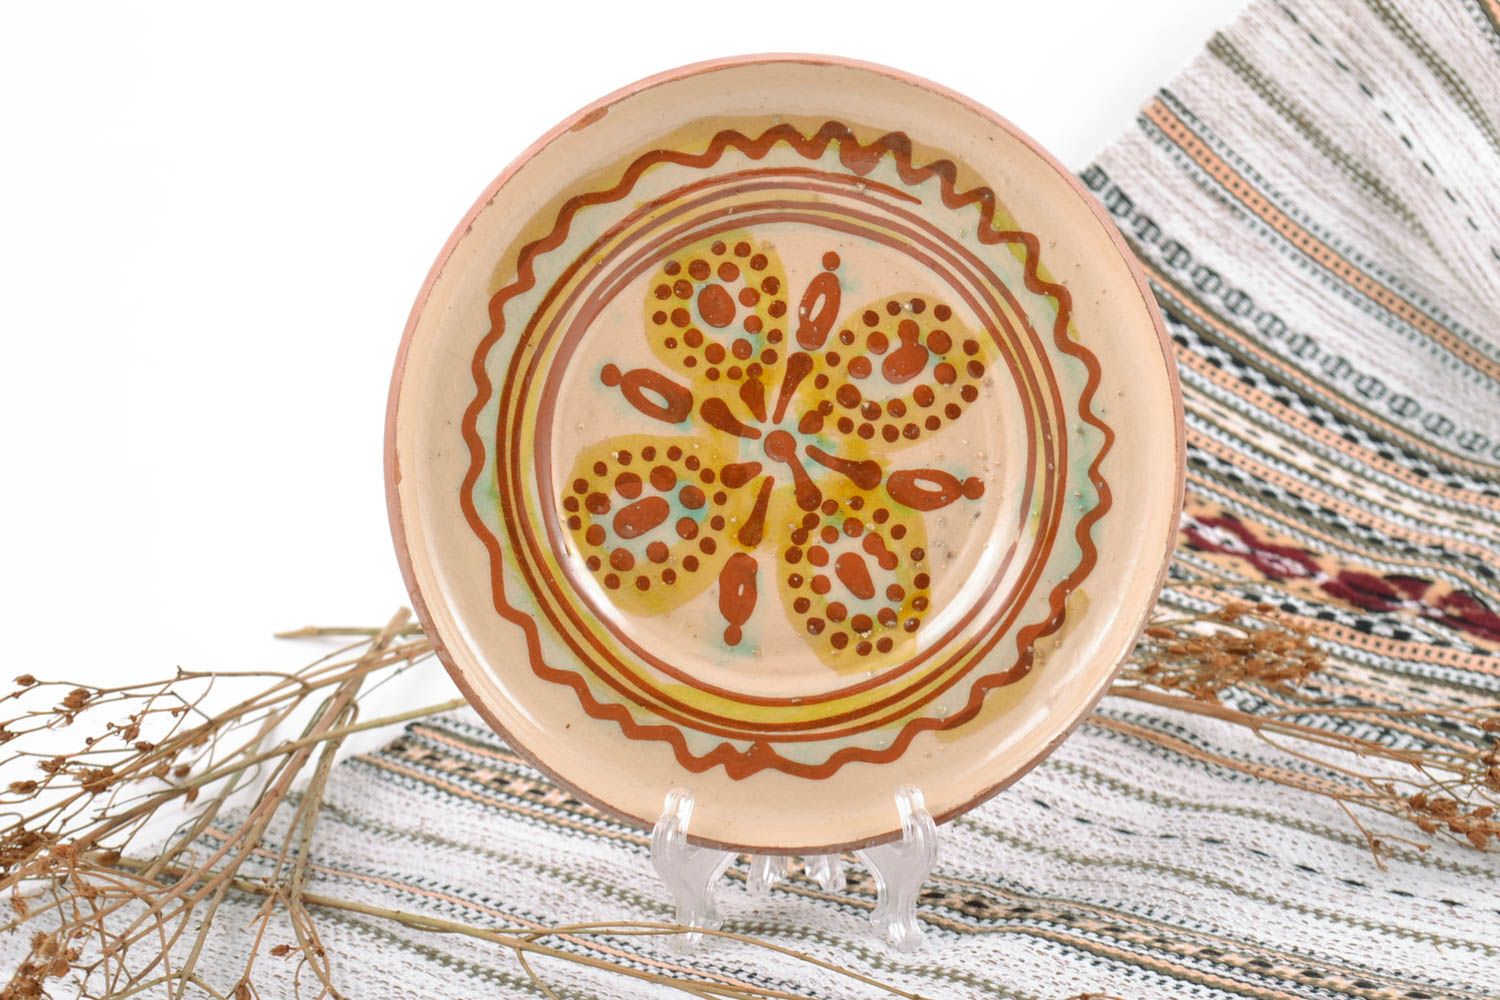 Красивая глиняная тарелка расписанная глазурью ручной работы оригинальная для декора фото 1